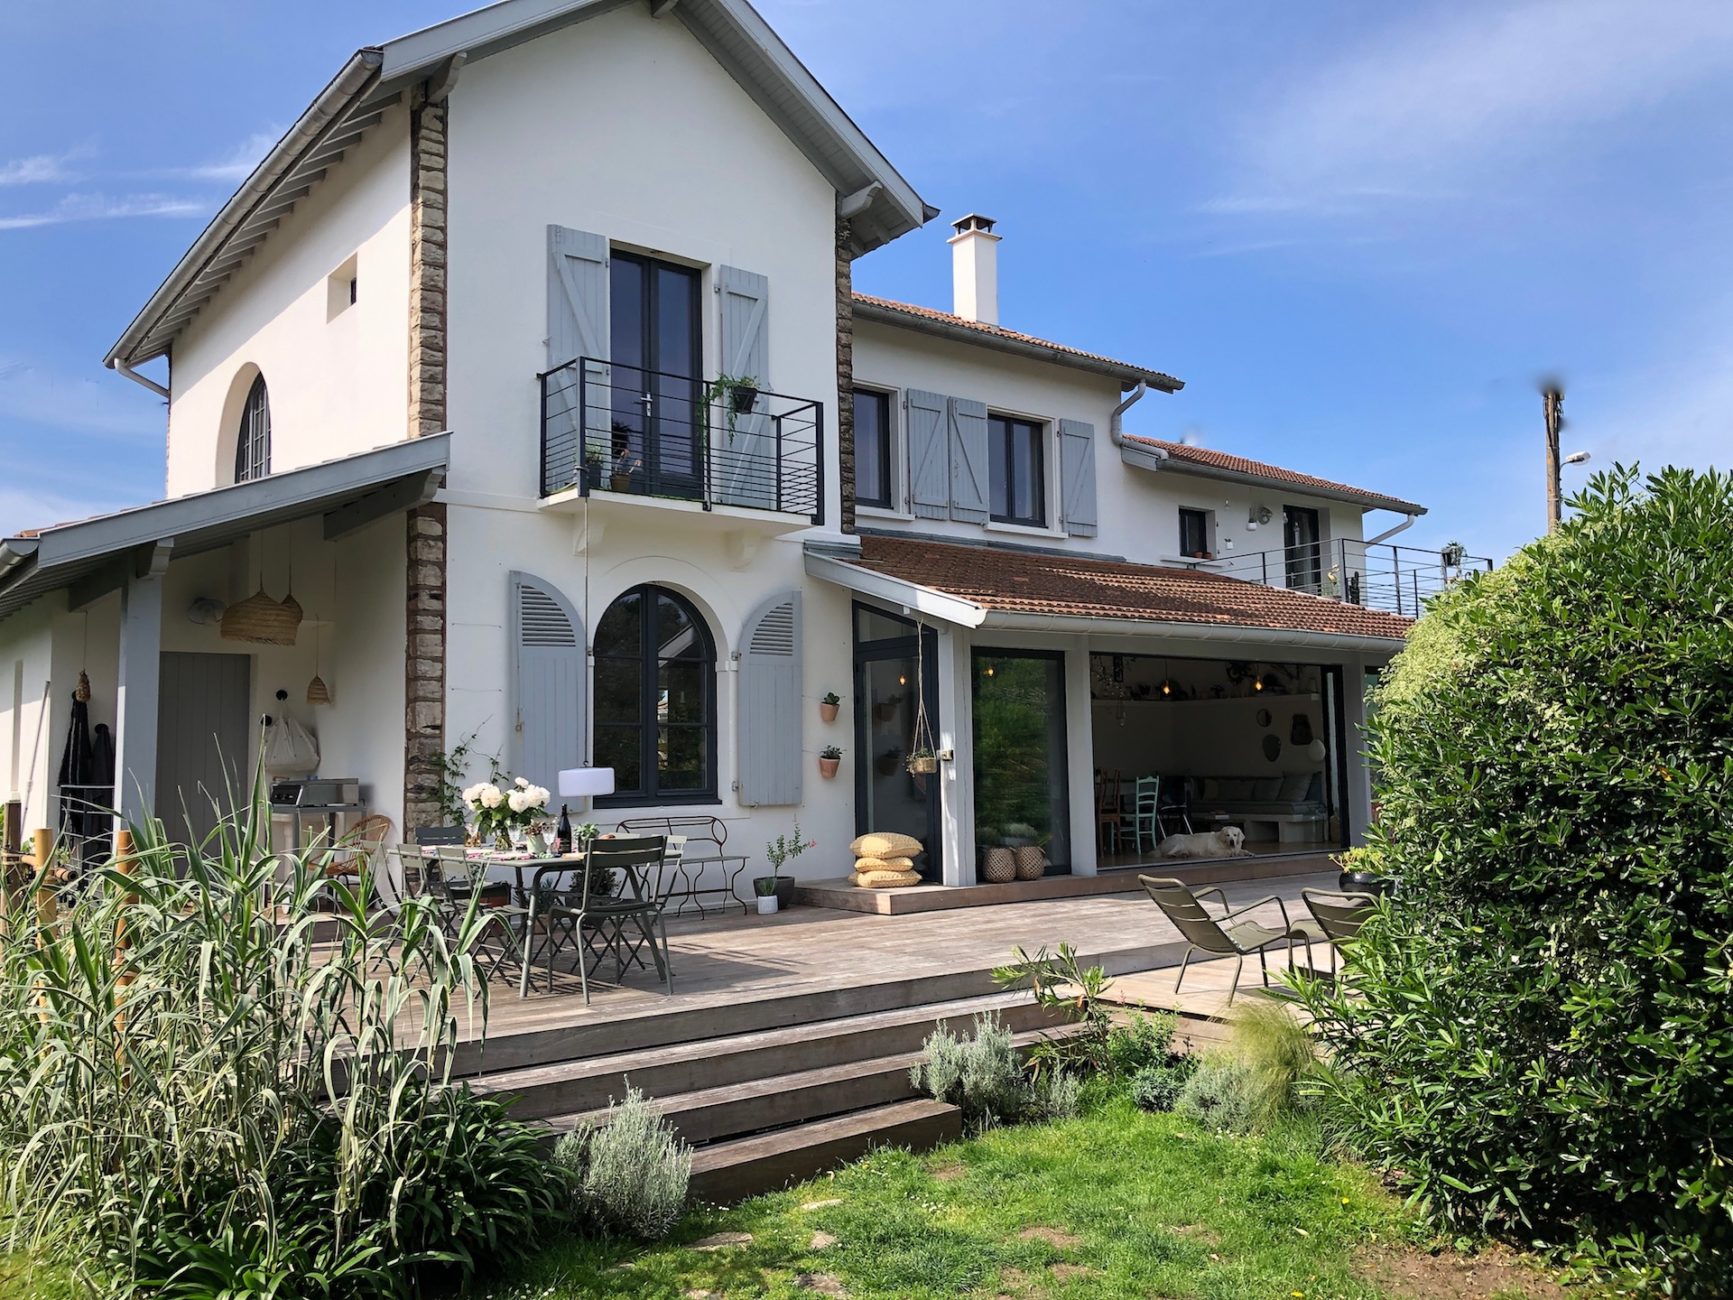 Maison Lekua, terrasse paisible au coeur du village des 5 Cantons, Anglet, locations maisons de famille, Pays Basque, France, SImpleLuxe